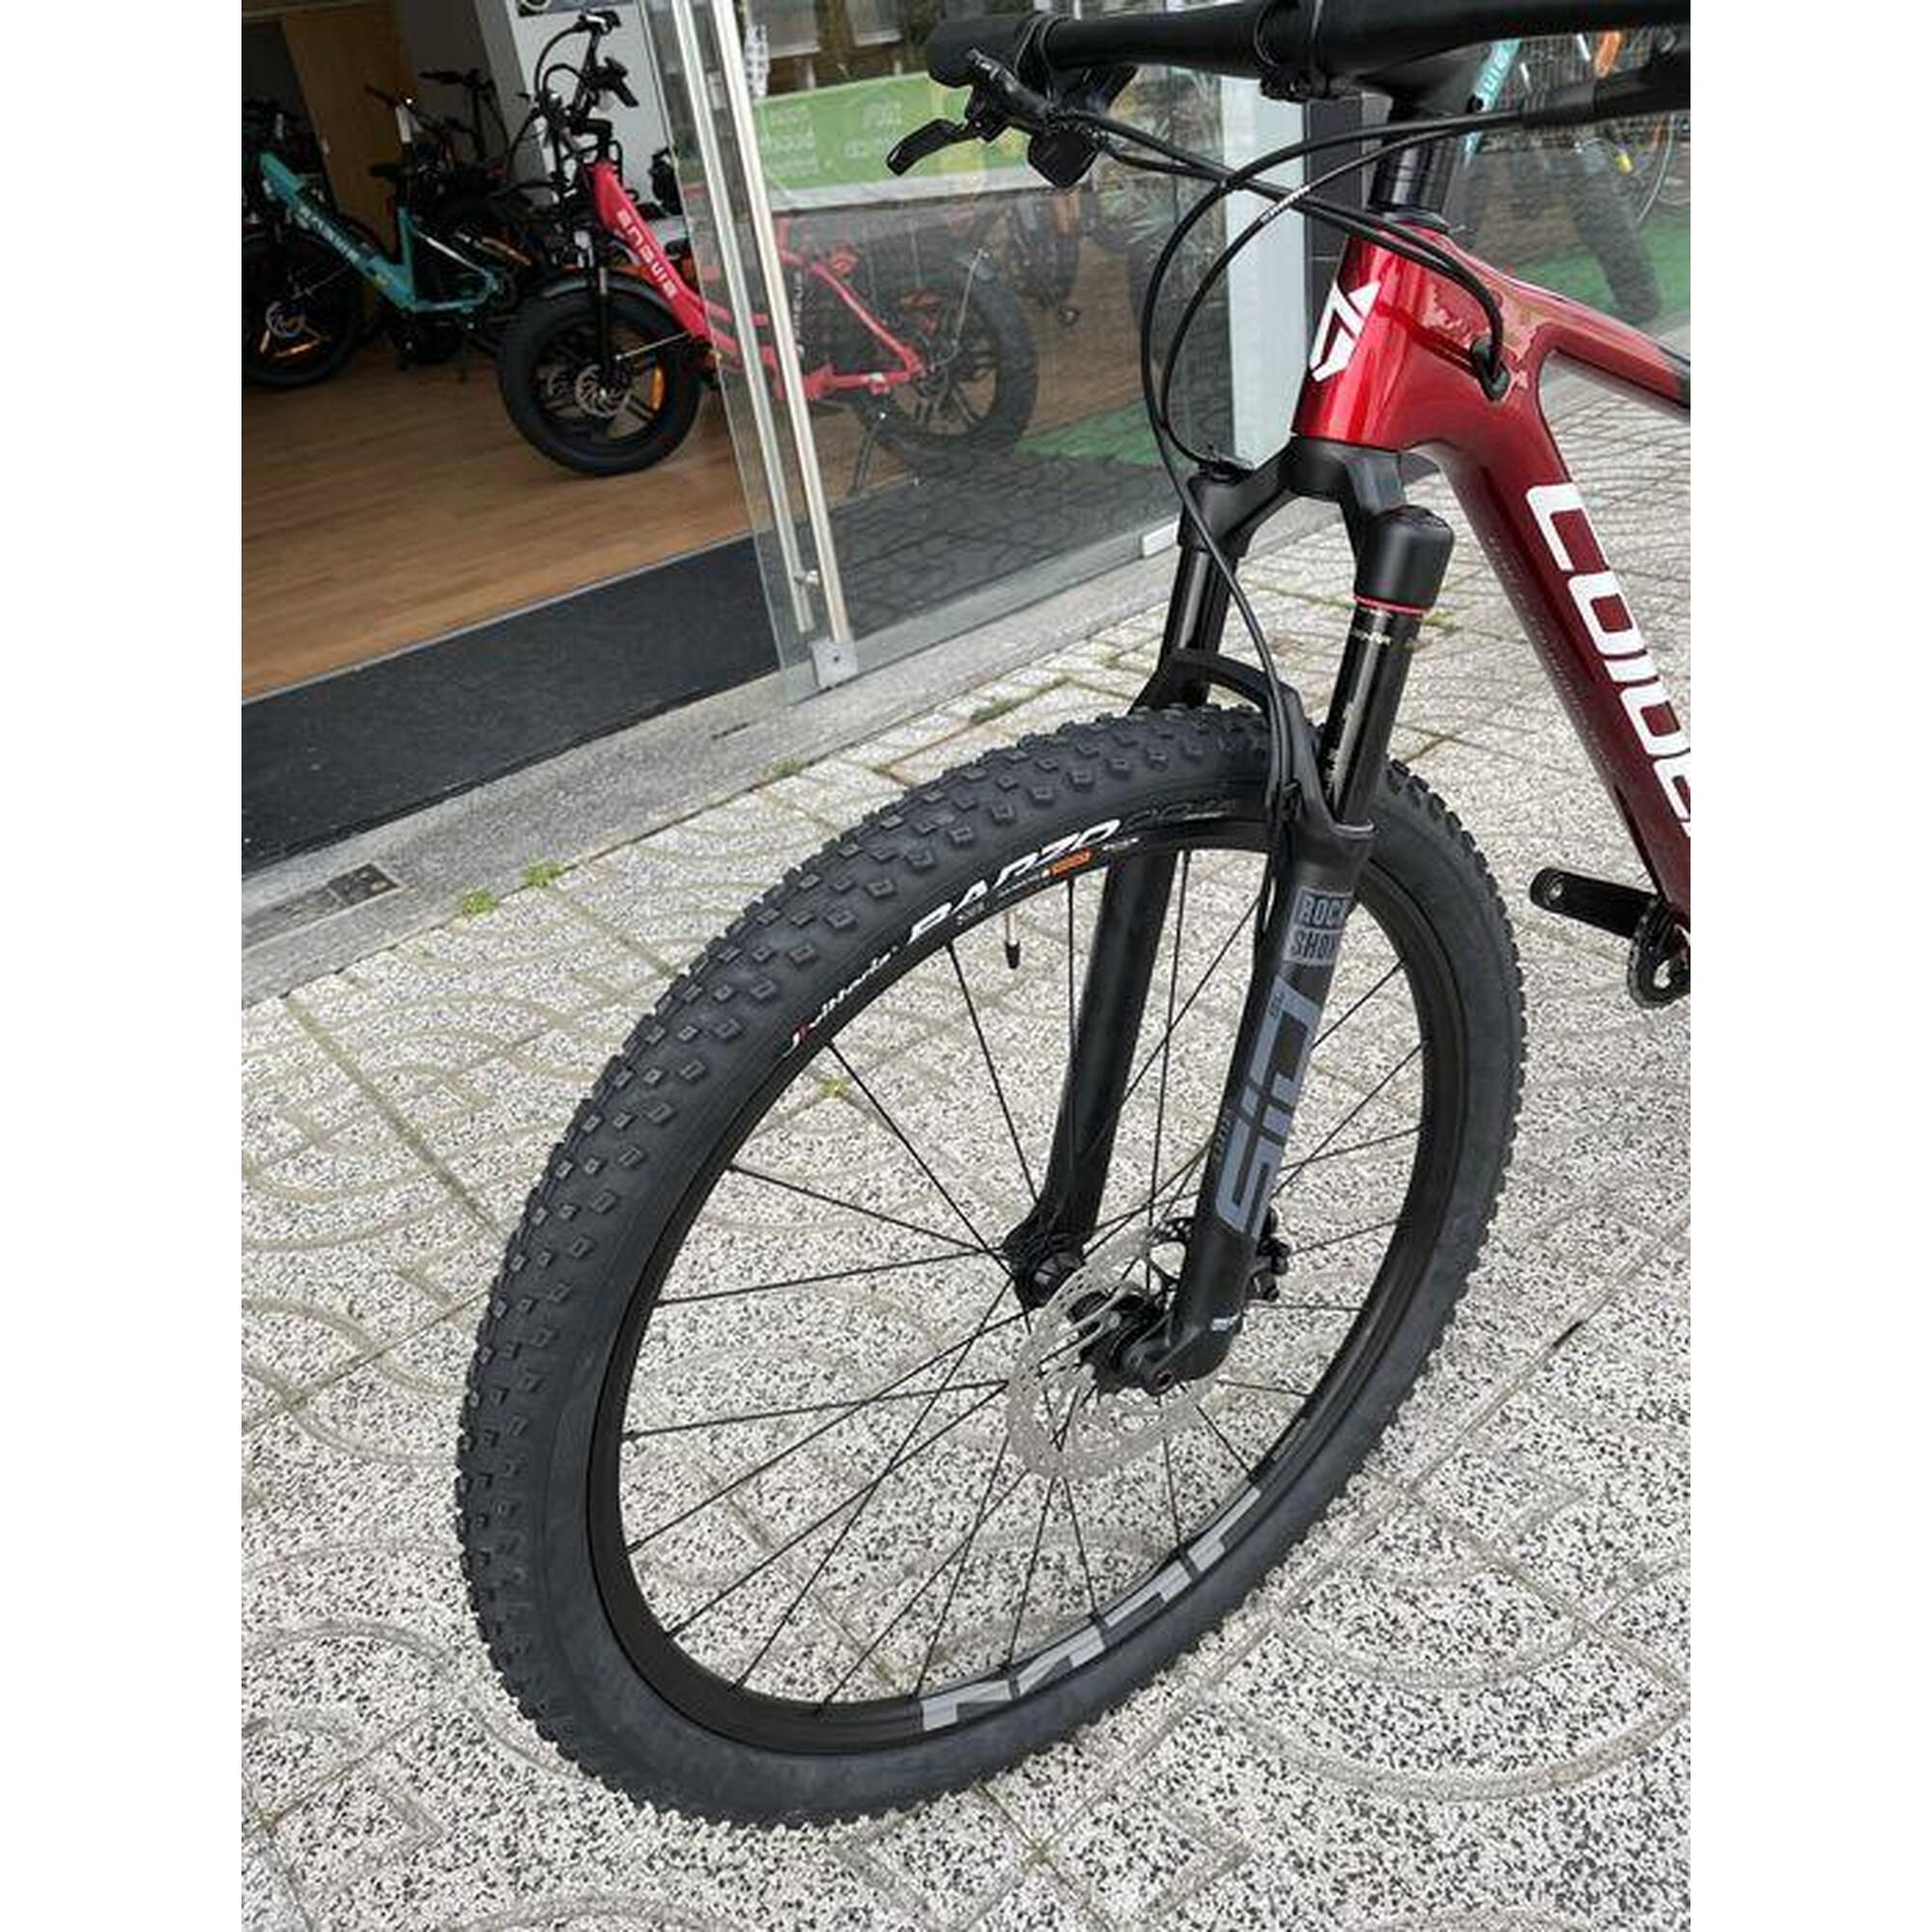 Bicicleta BTT - Coluer POISON SL 4.4 - Preto e vermelho